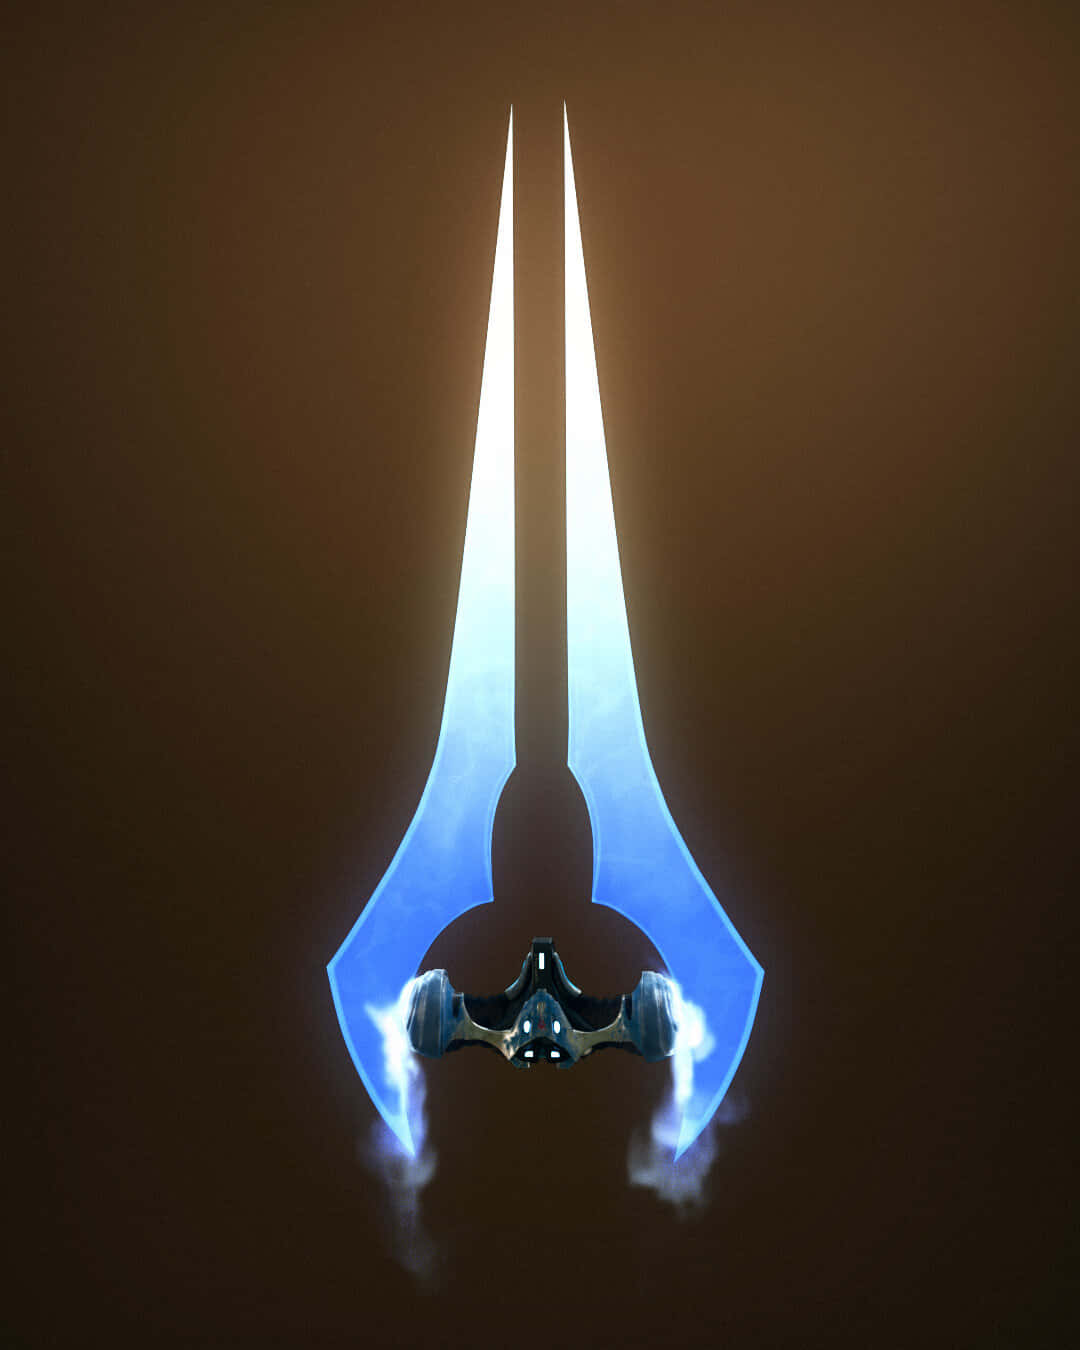 Download Halo Energy Sword Glowing in the Dark Wallpaper | Wallpapers.com